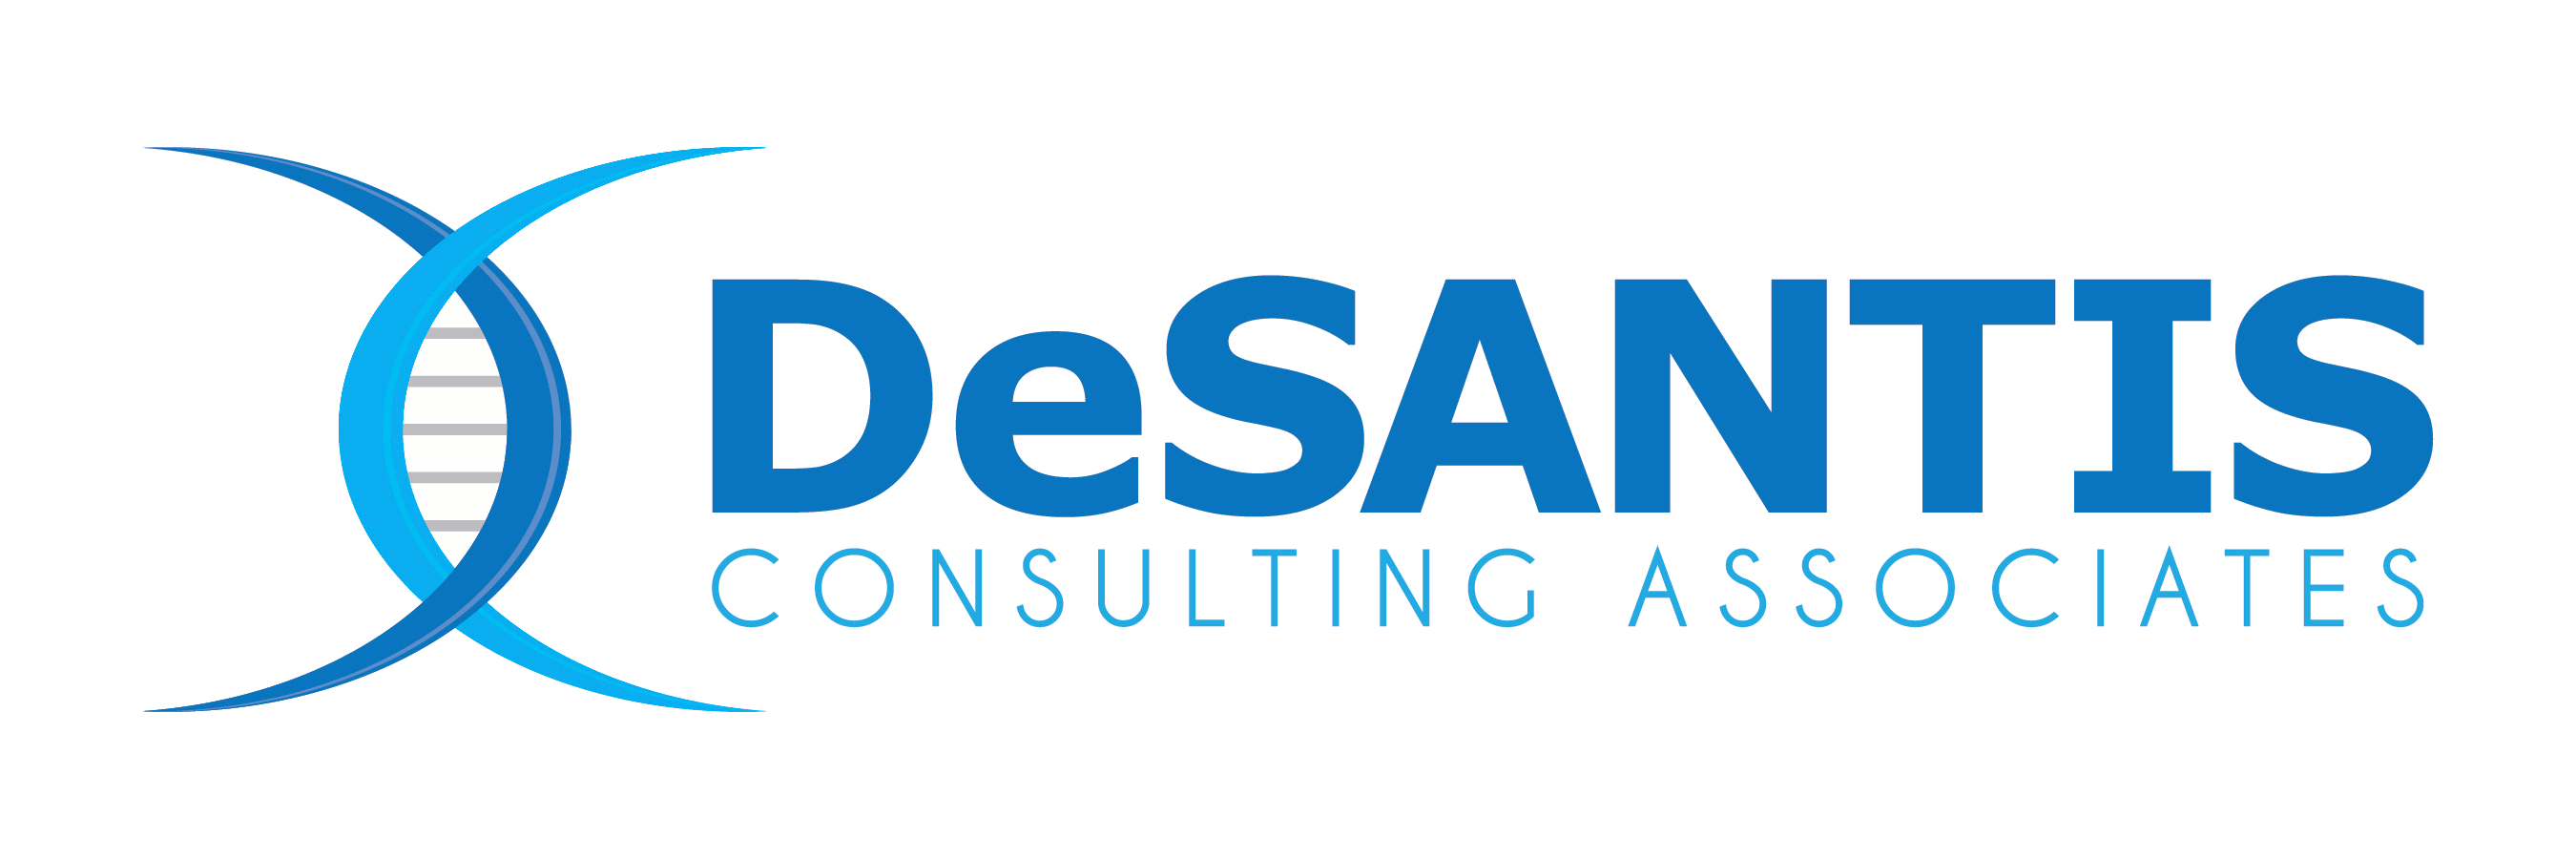 DeSantis Consulting Associates